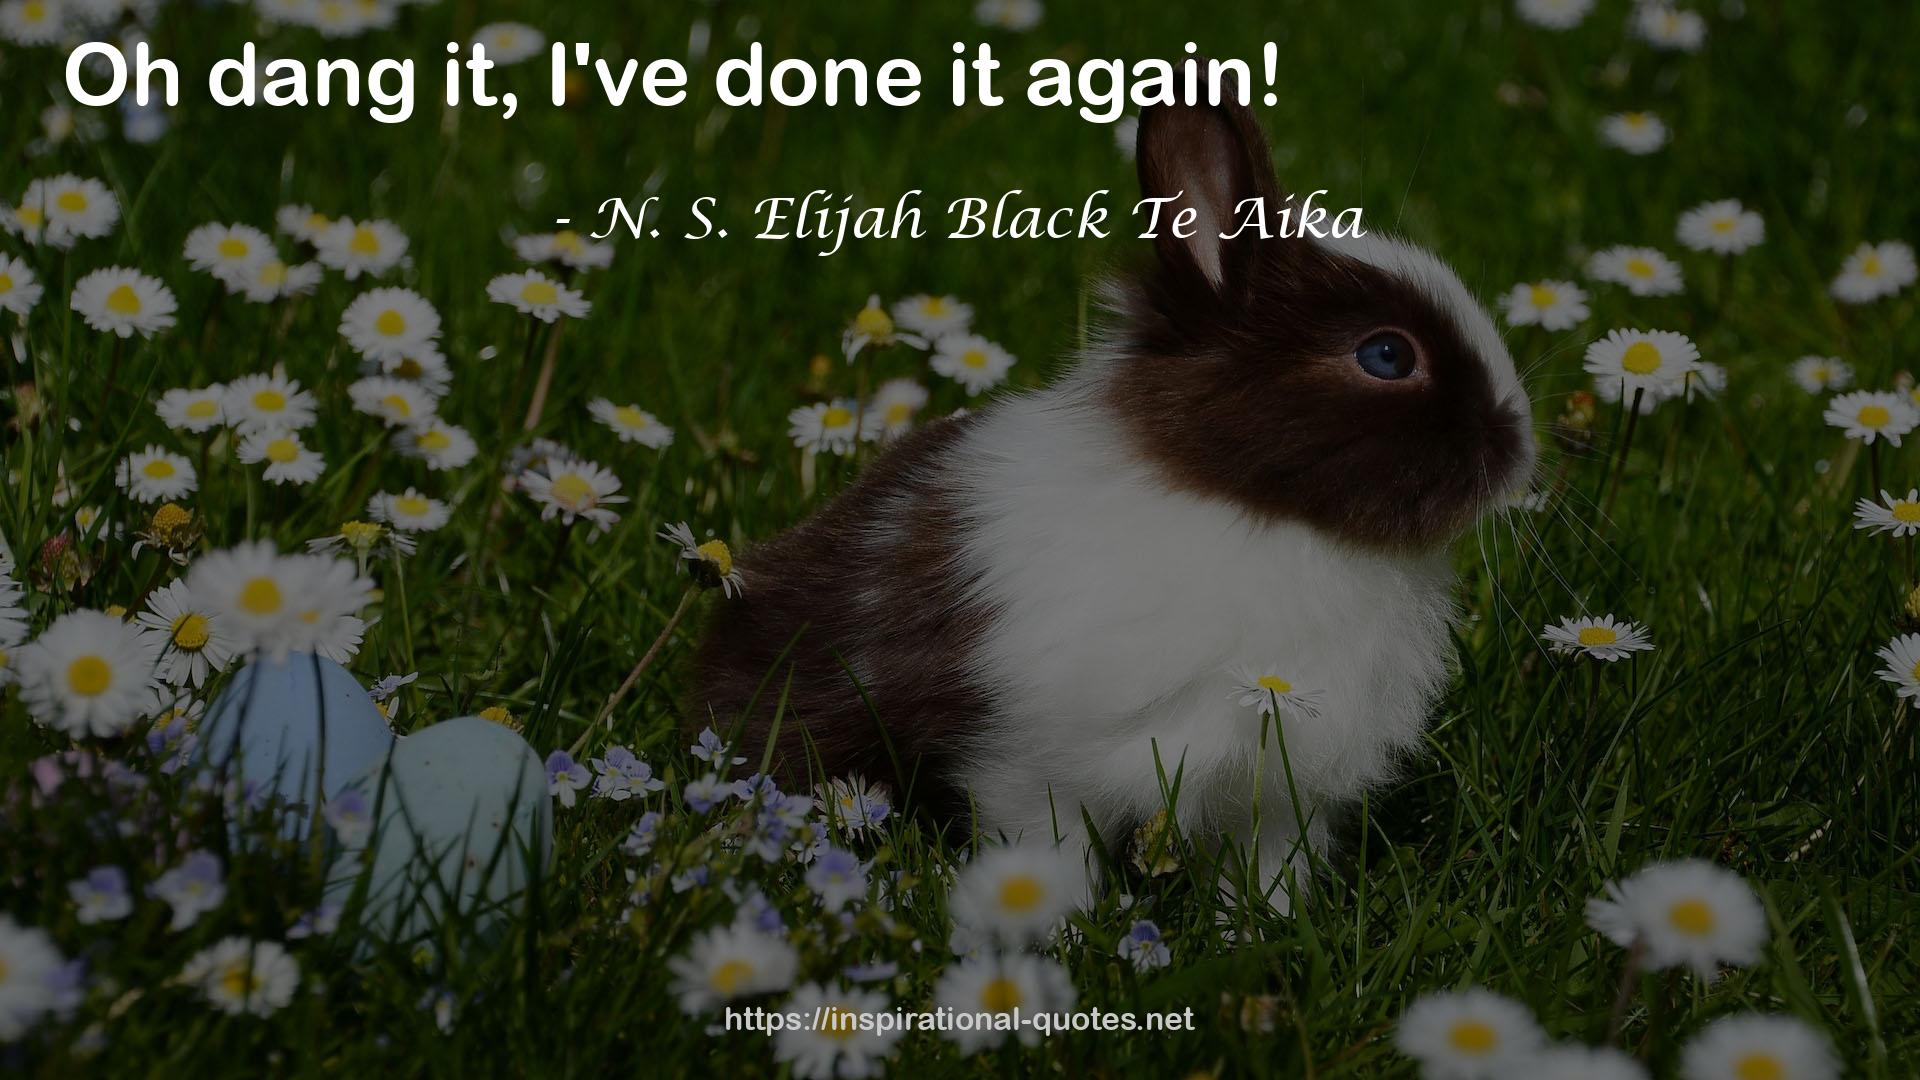 N. S. Elijah Black Te Aika QUOTES